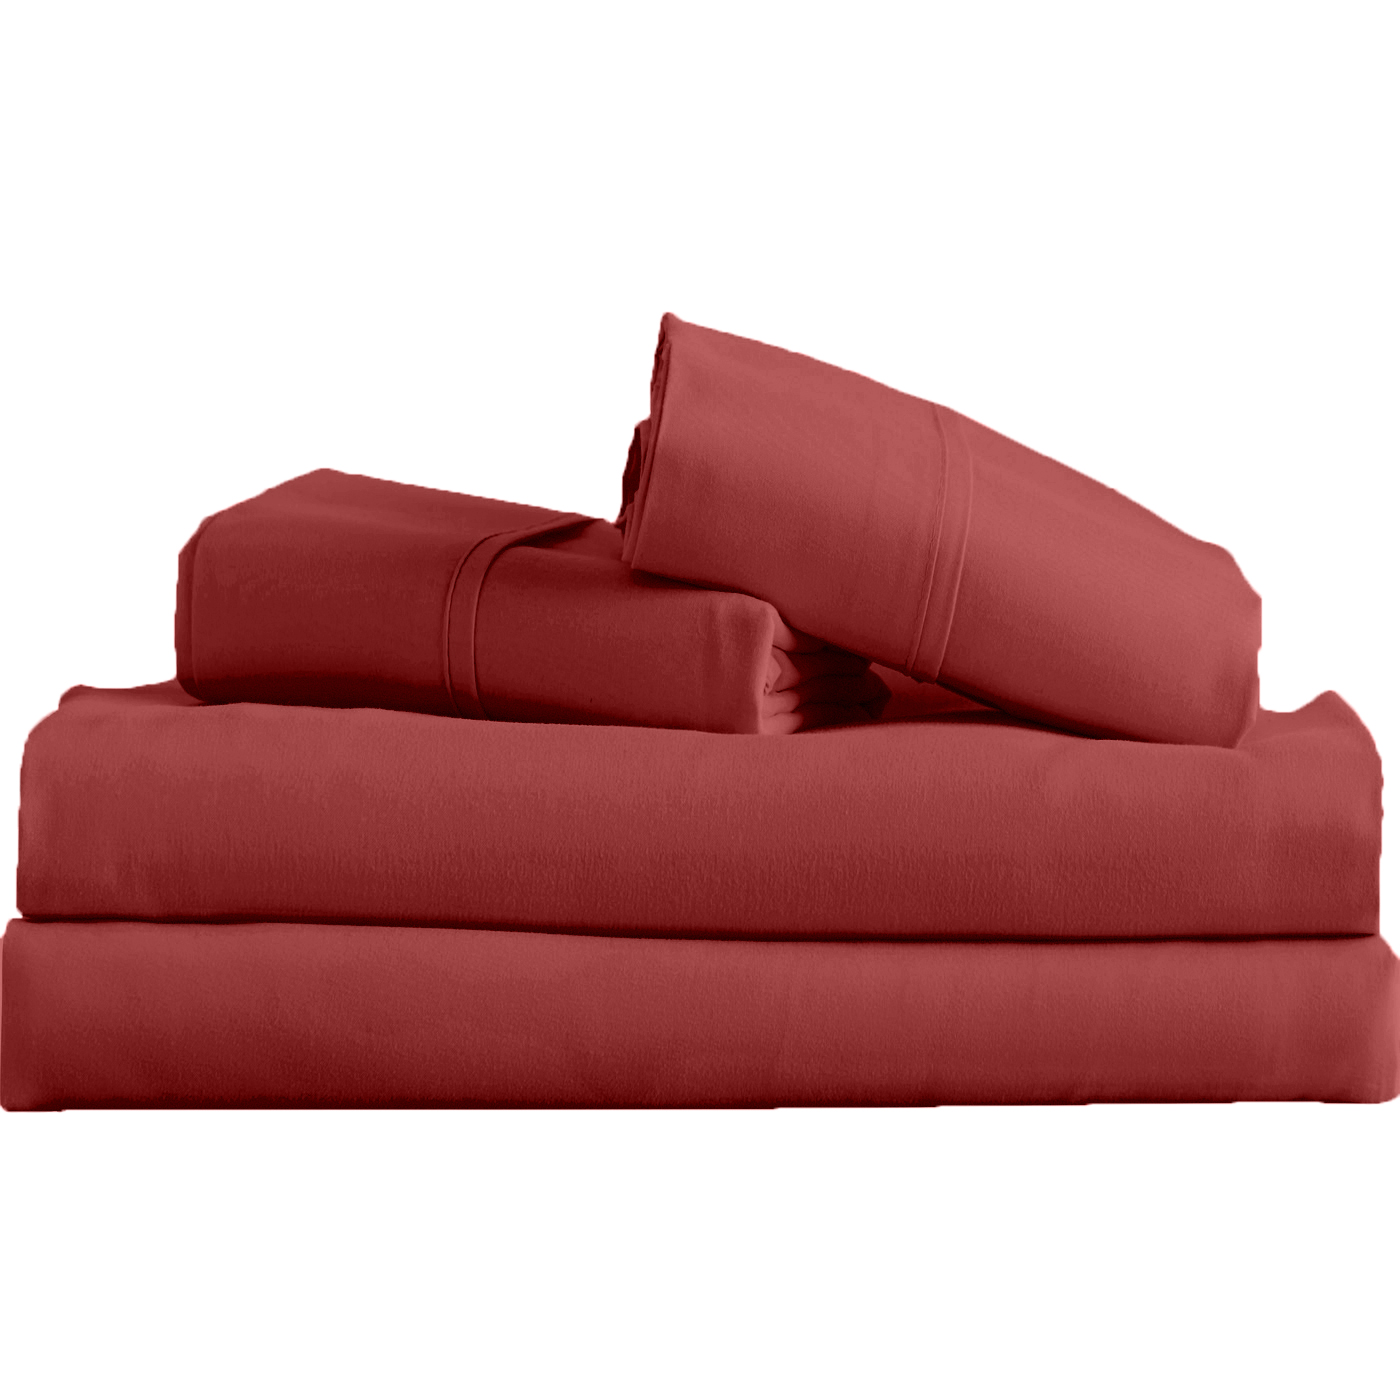 Supreme Super Soft 4 Piece Bed Sheet Set Deep Pocket Bedding - Full Size Maroon - image 2 of 2